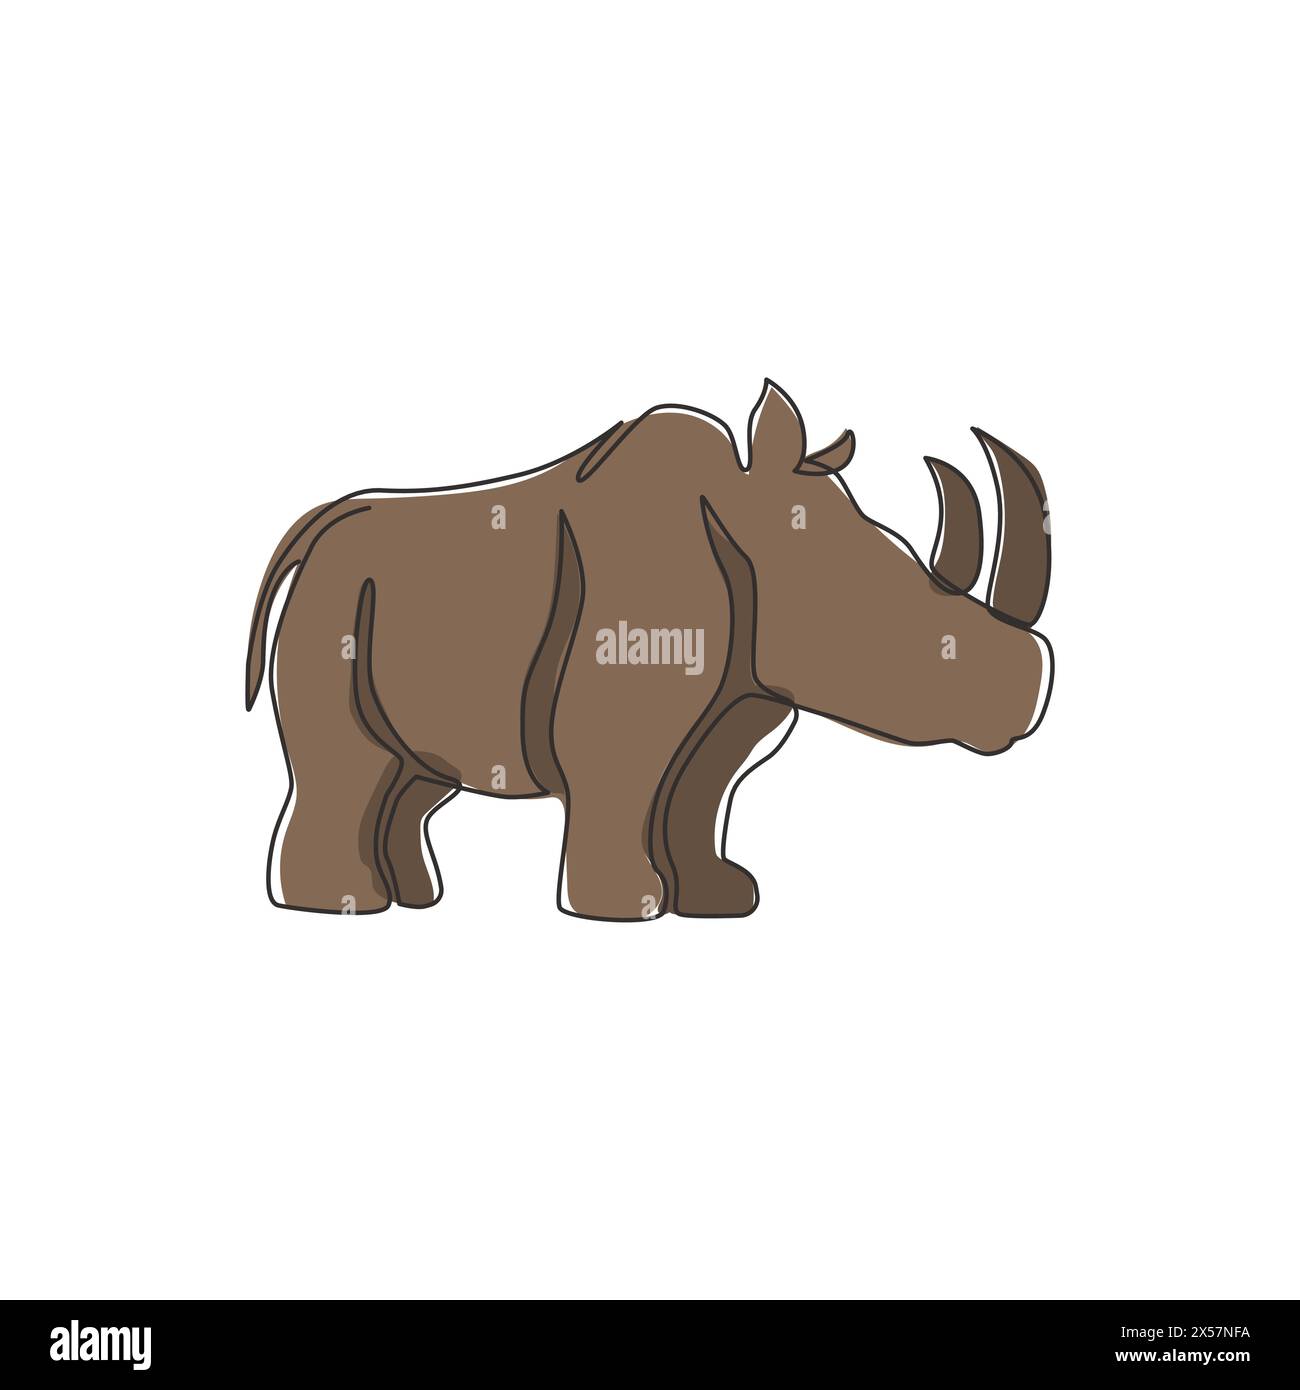 Un dessin d'une seule ligne de rhinocéros forts pour l'identité du logo du parc national de conservation. Concept de mascotte d'animaux de grand rhinocéros africain pour le zoo national sa Illustration de Vecteur